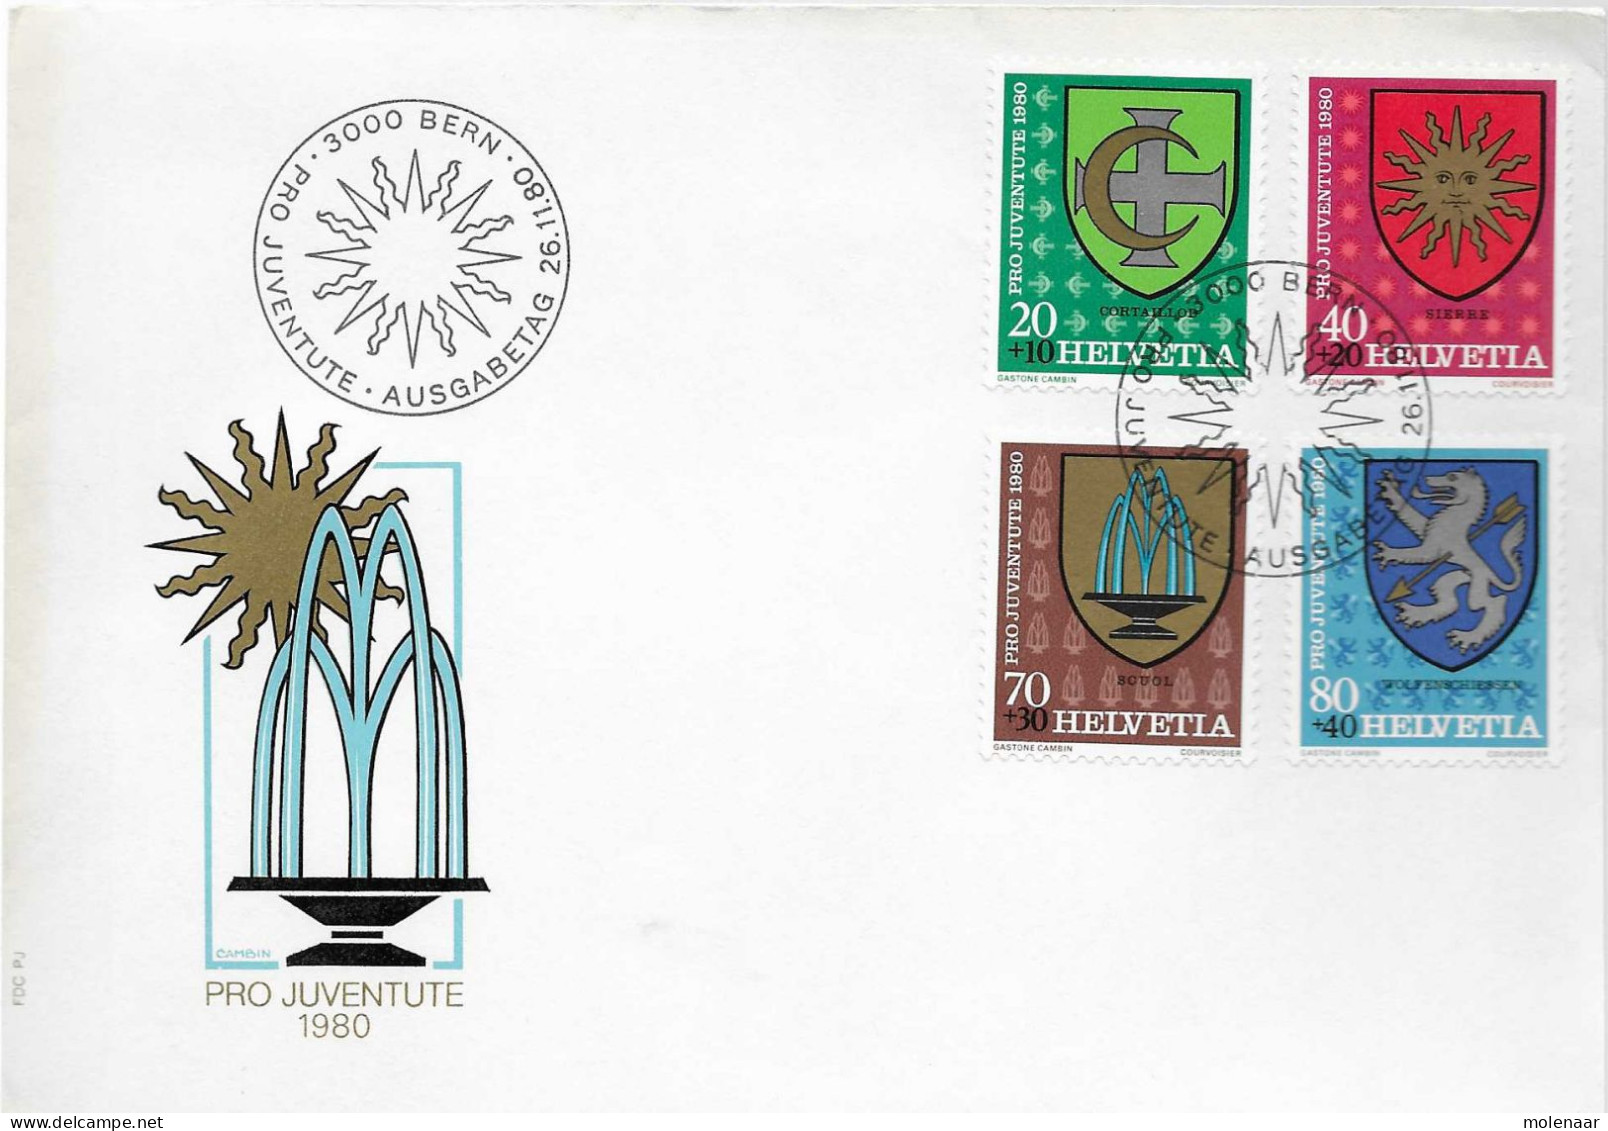 Postzegels > Europa > Zwitserland >1970-1979> Brief Met No. 1181-1184 (17665) - FDC